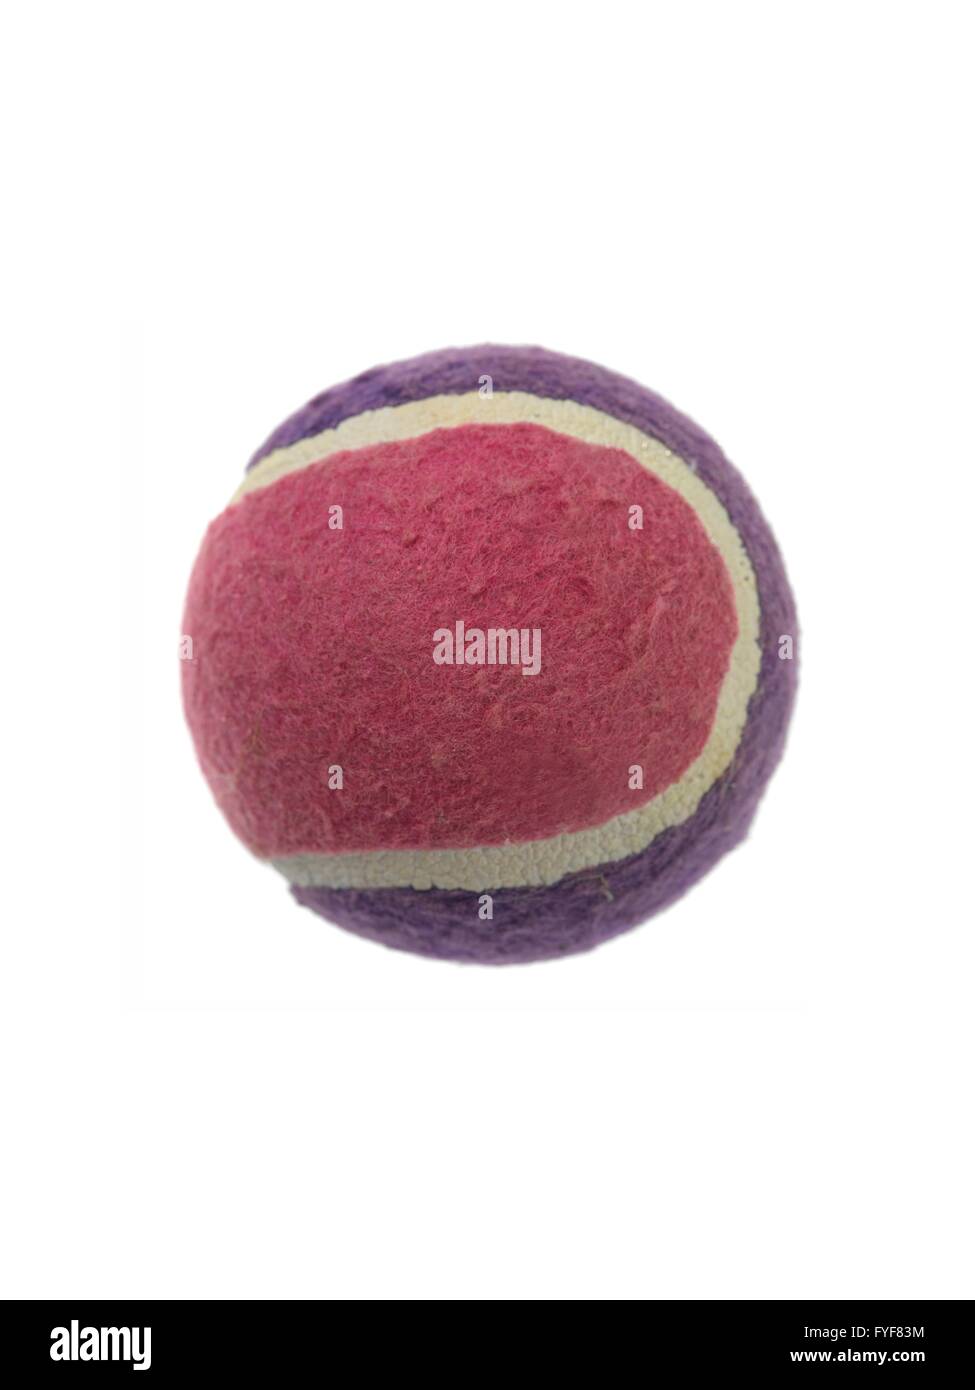 Balles de tennis sport sur gazon vert artificiel Banque D'Images